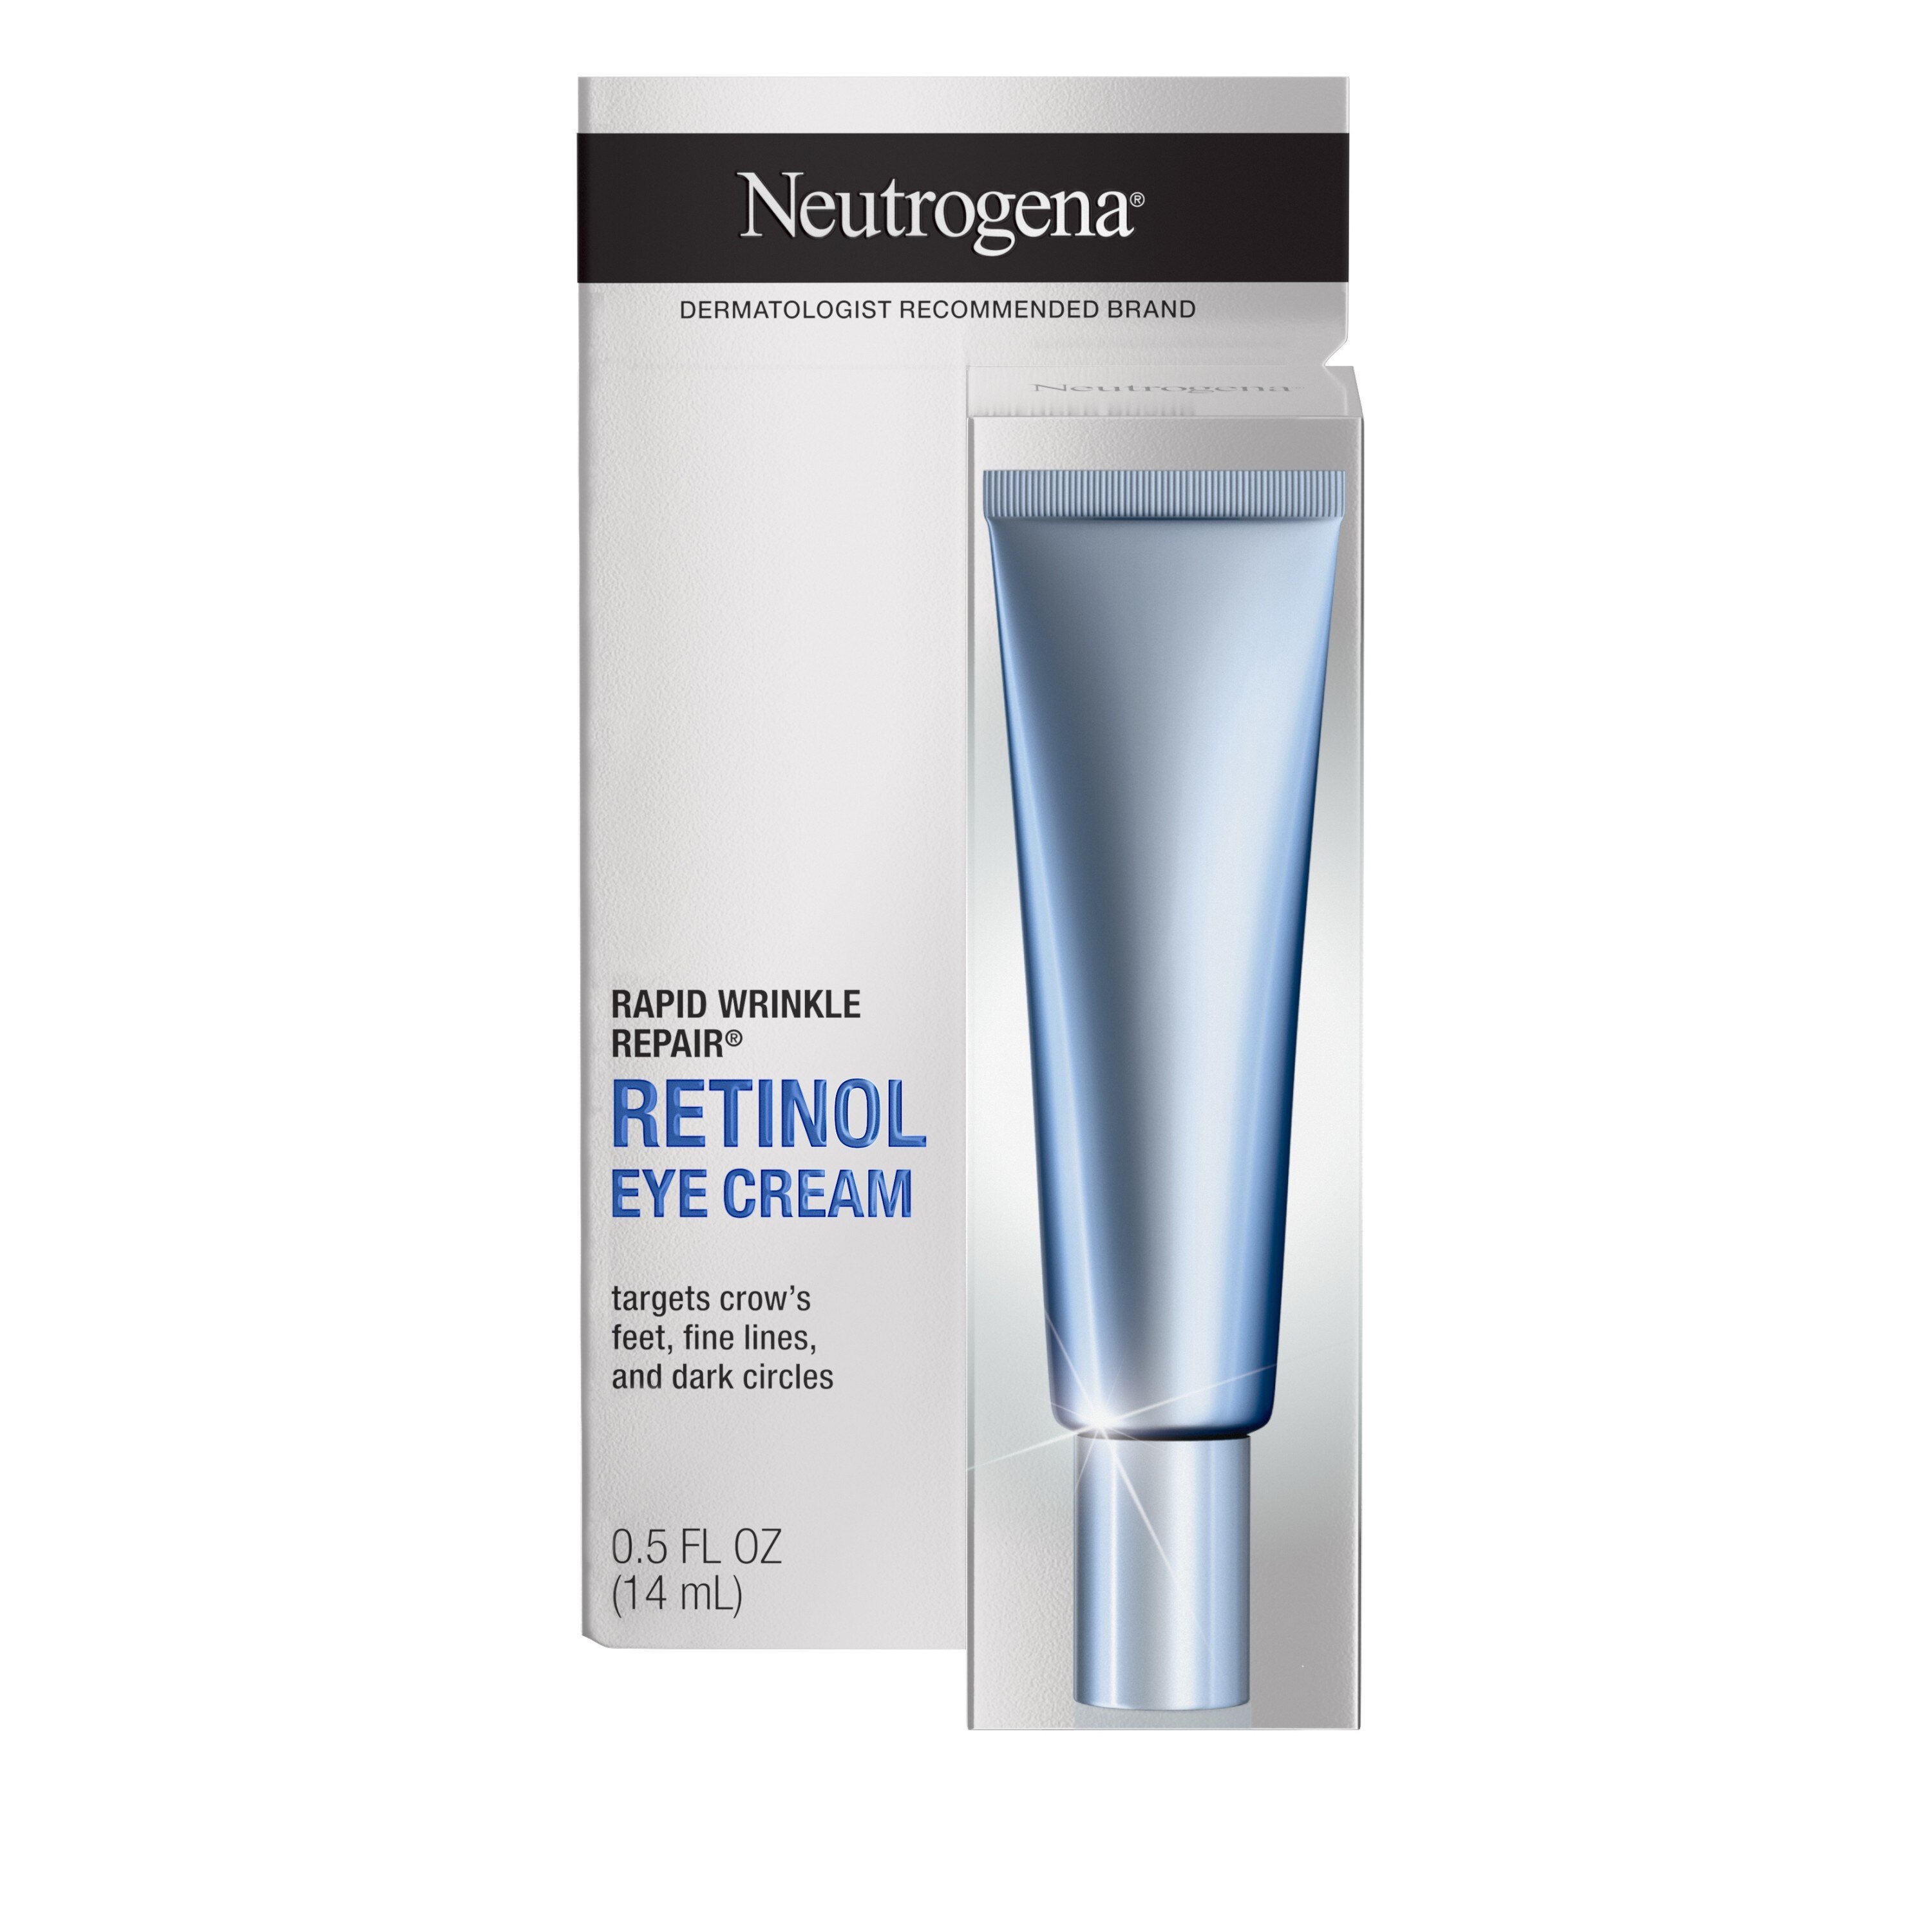 Neutrogena Rapid Wrinkle Repair Retinol Eye Cream, 0.5 OZ